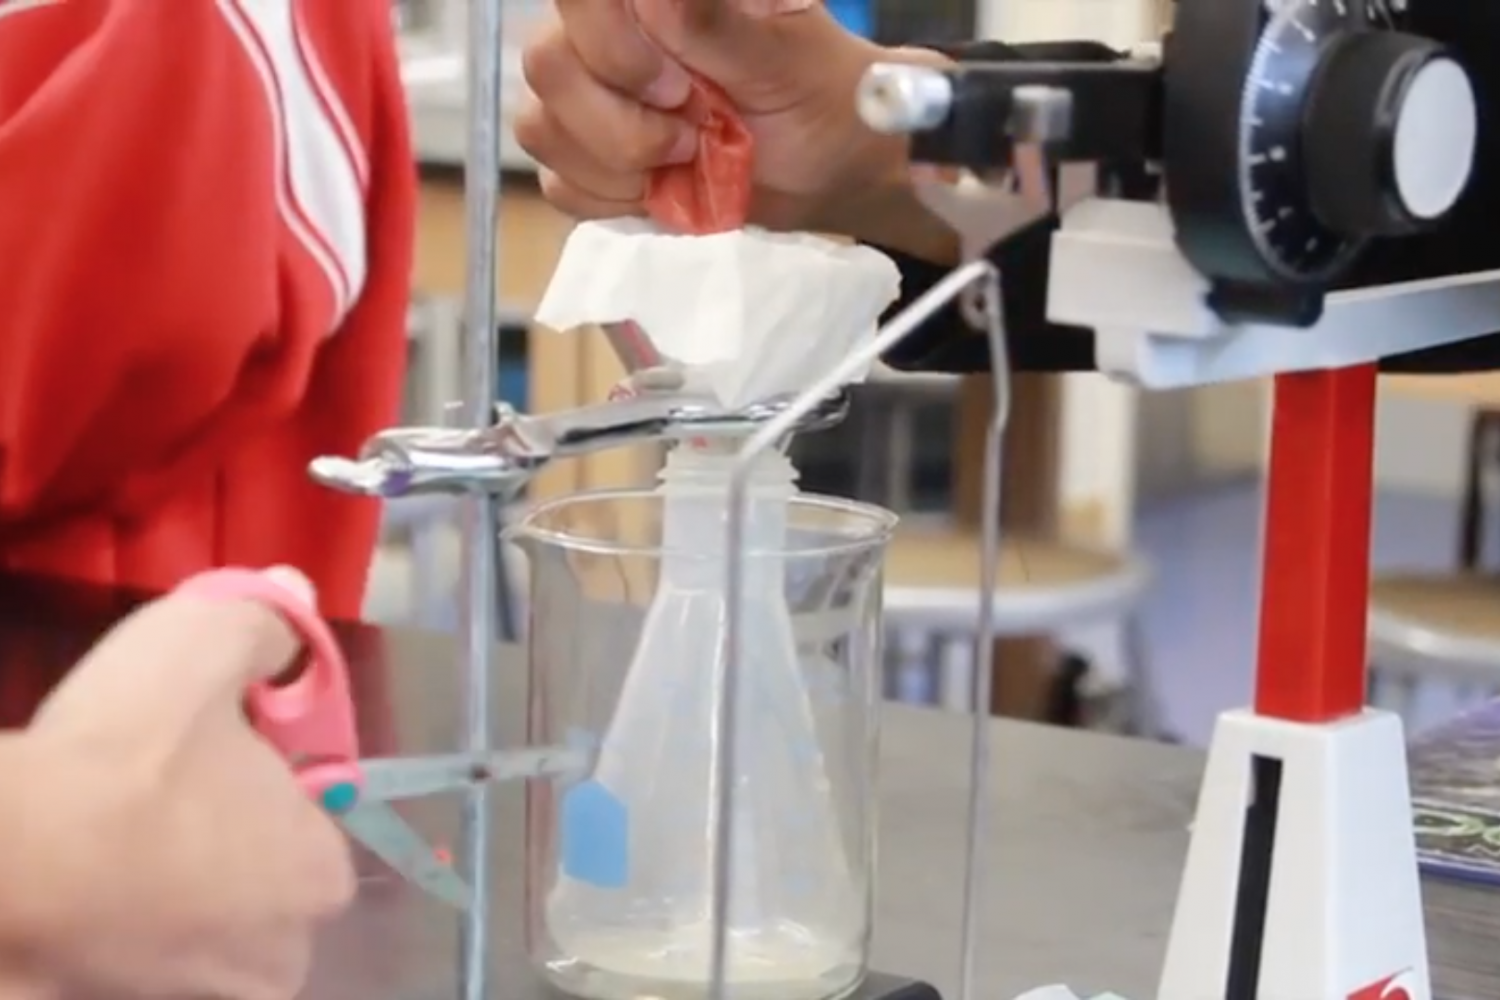 VIDEO: Freshmen analyze strawberry DNA